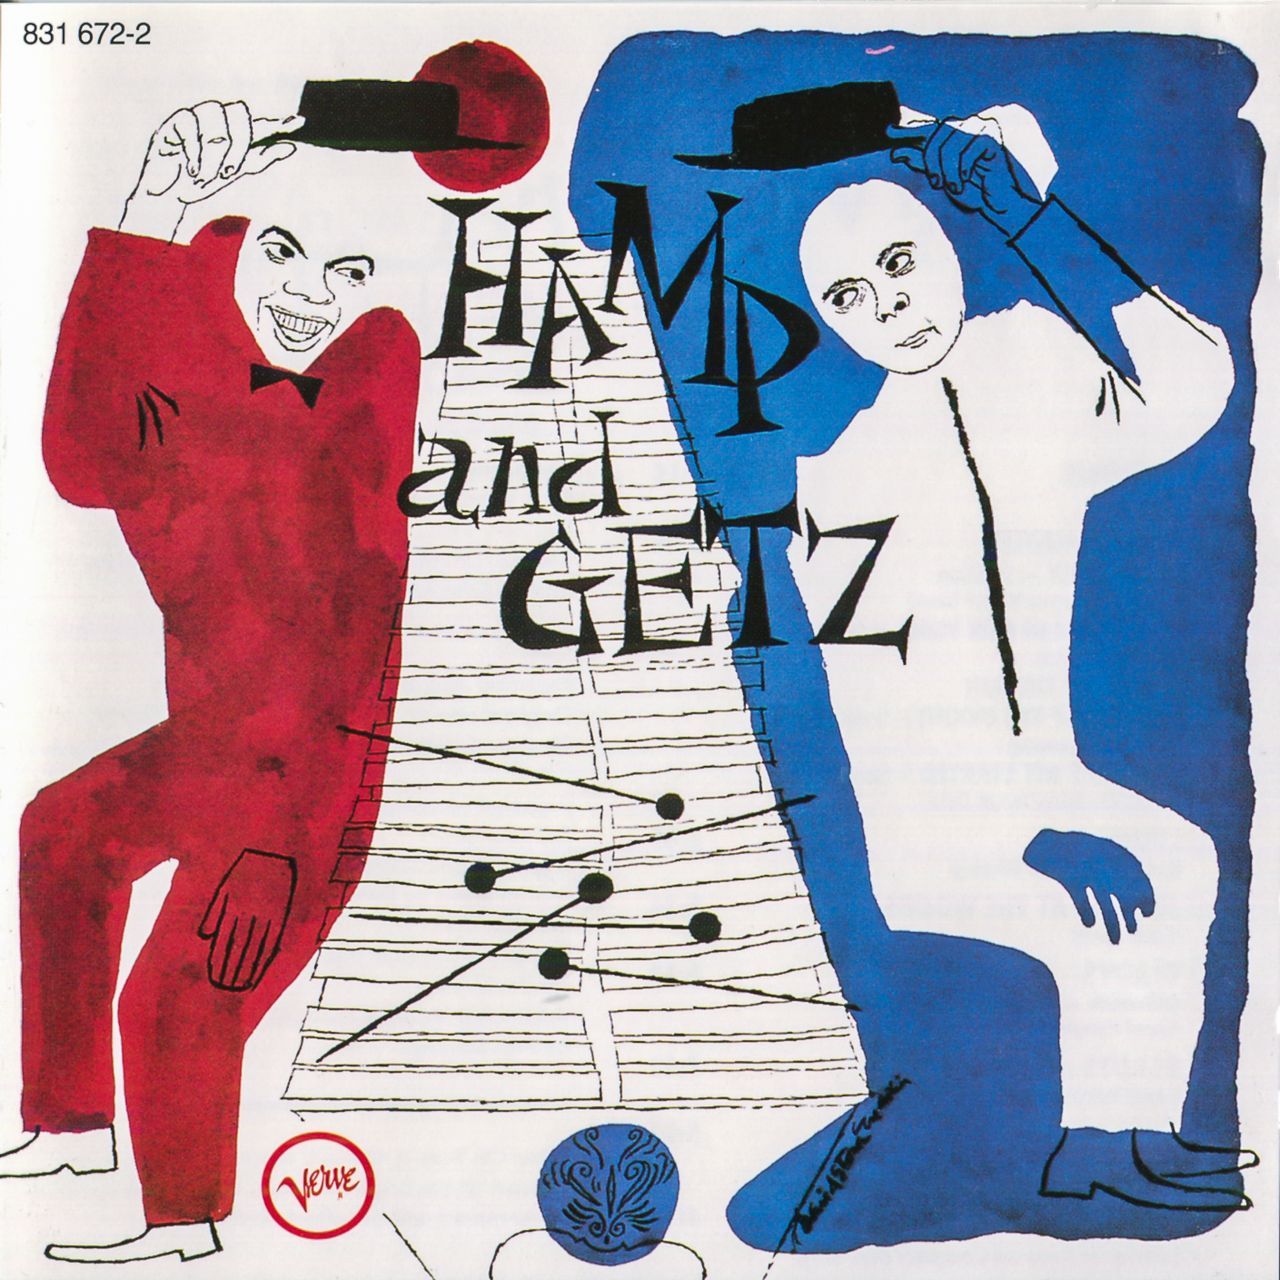 Hamp and Getz album art